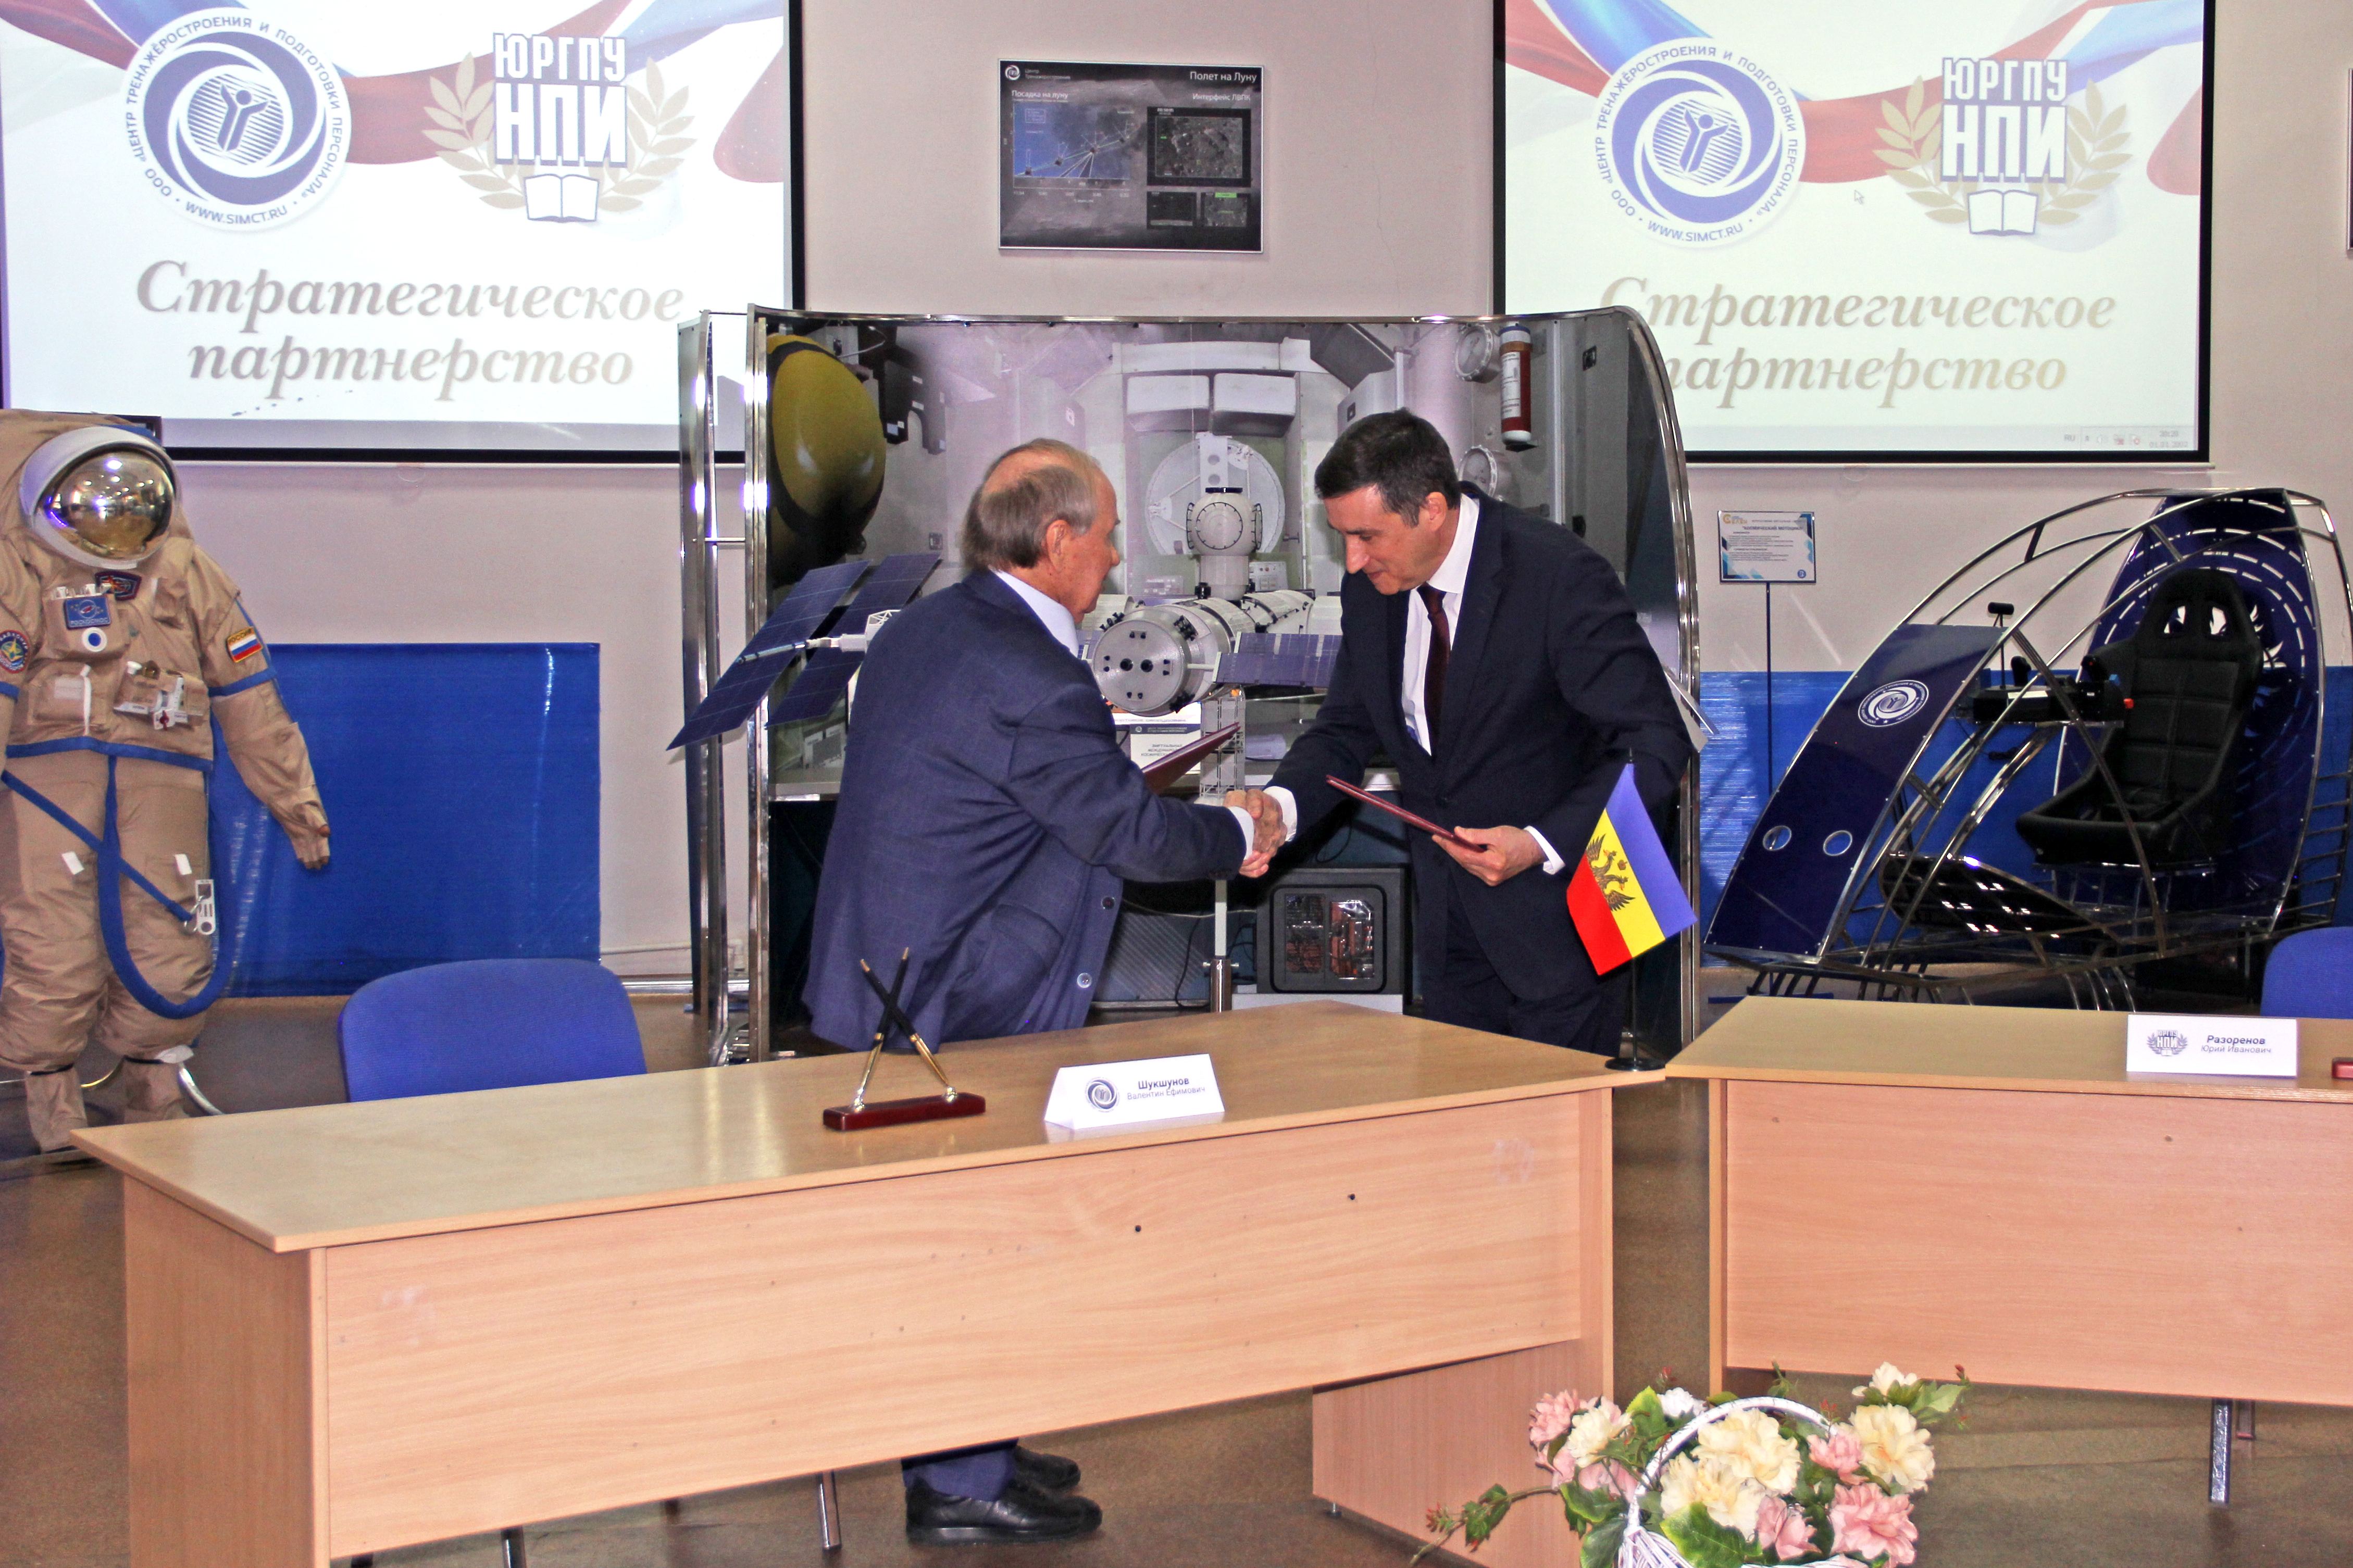 Центр тренажеростроения и ЮРГПУ (НПИ) подписали соглашение о стратегическом партнерстве